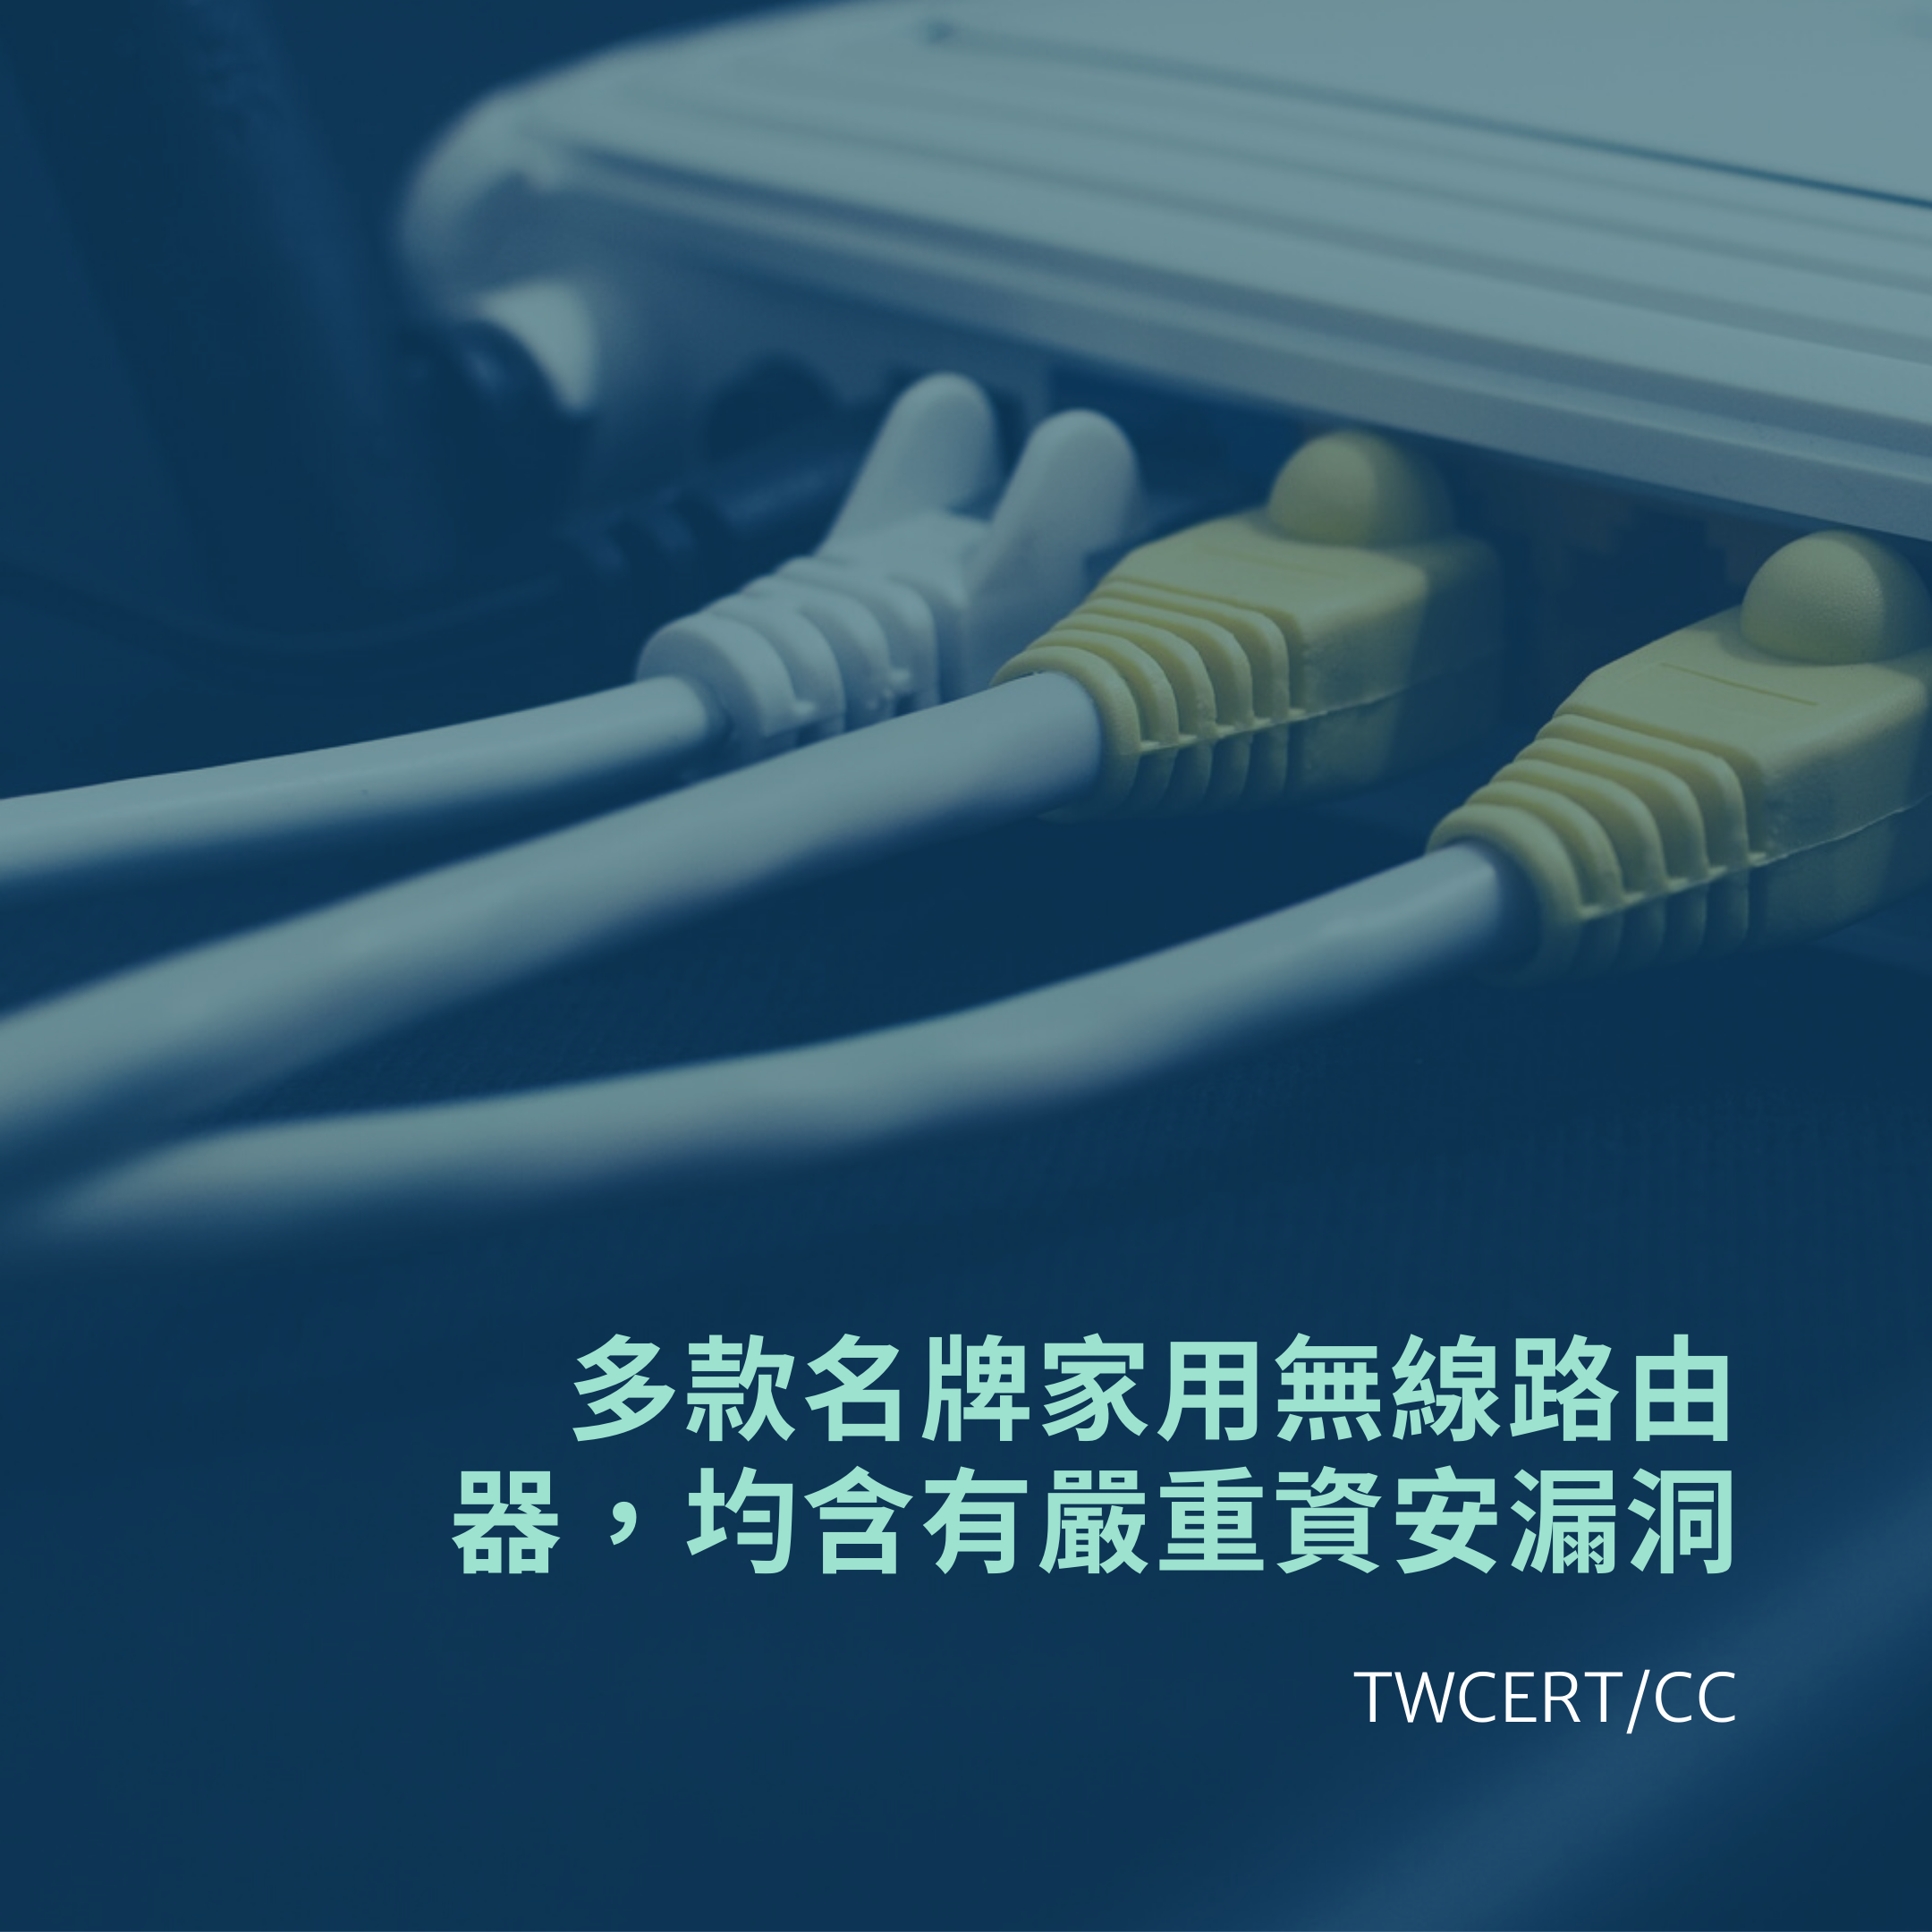 多款名牌家用無線路由器，均含有嚴重資安漏洞 TWCERT/CC